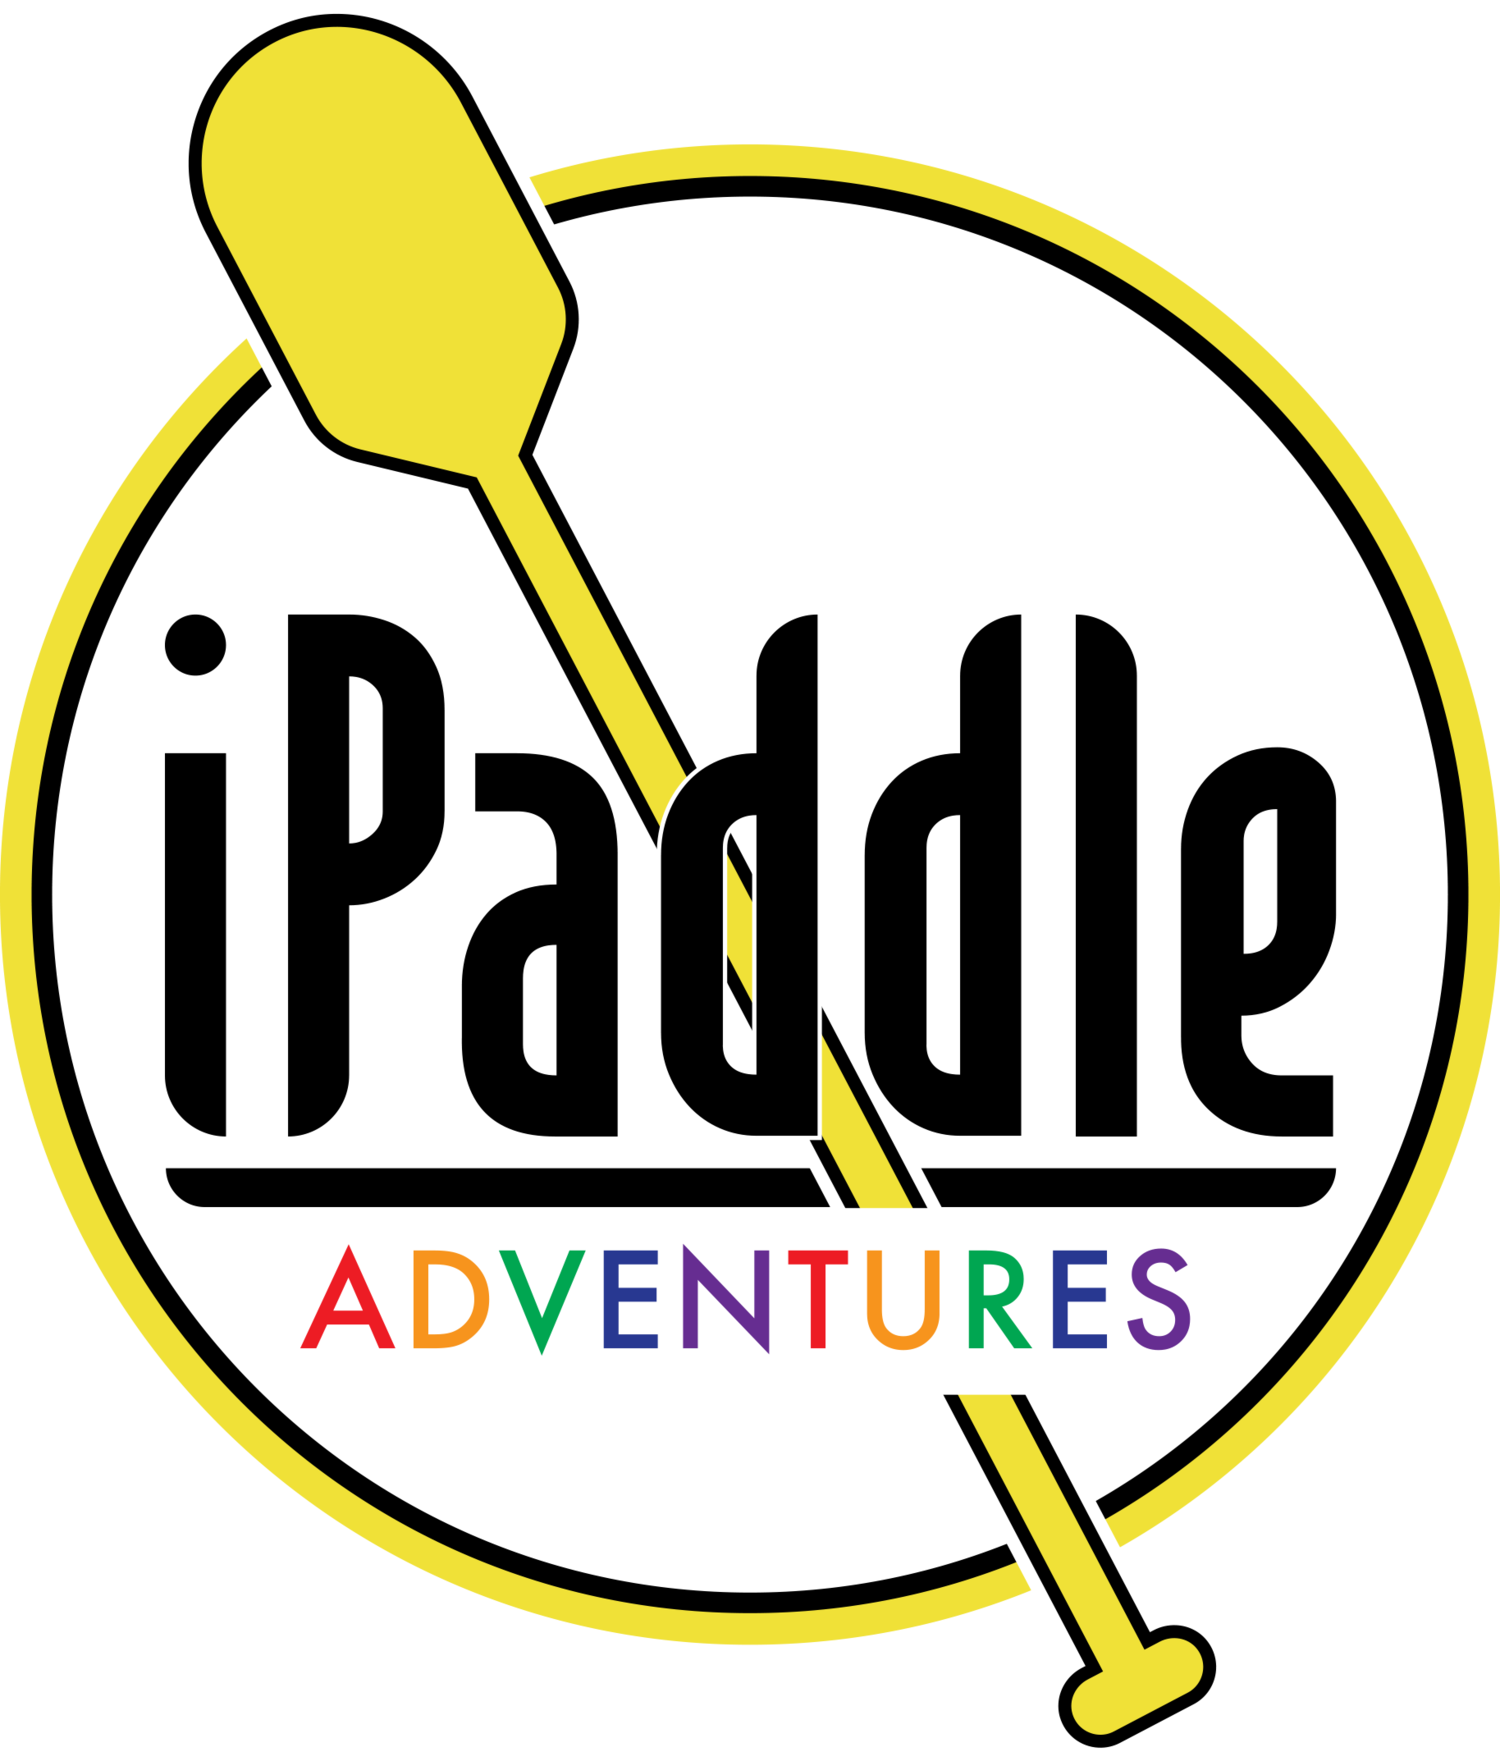 iPaddle Adventures